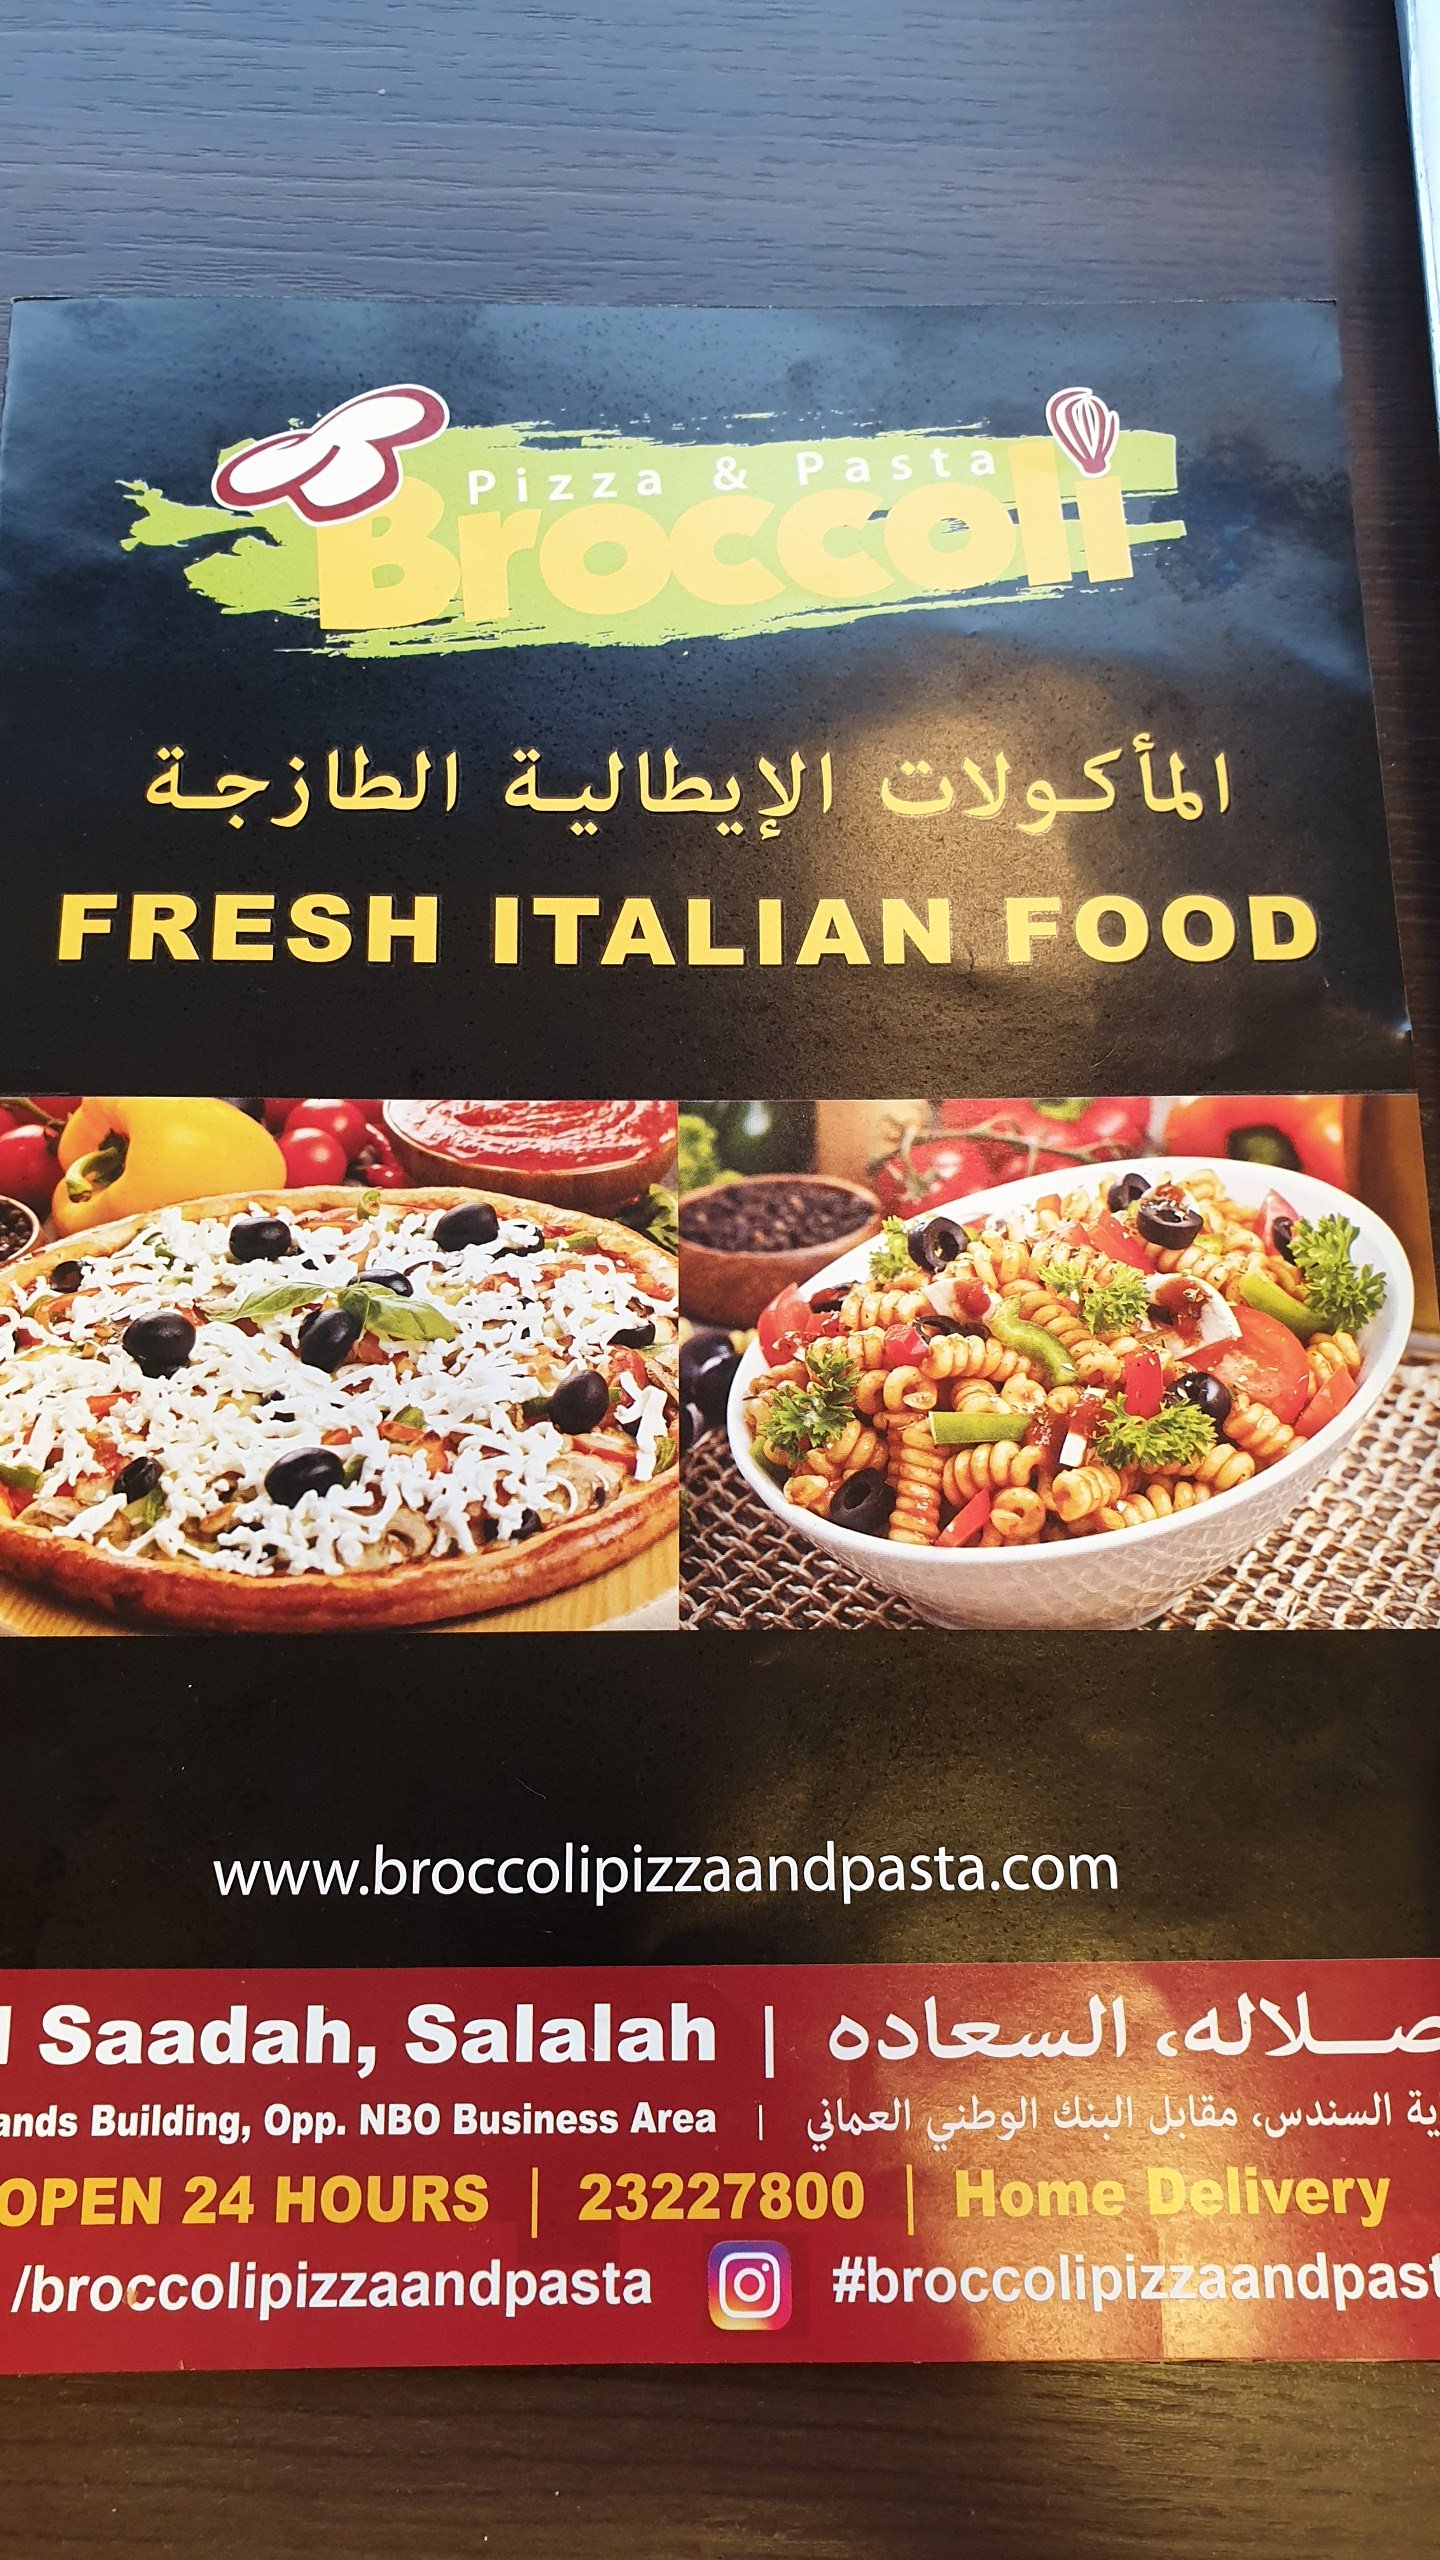 Broccoli Pizza & Pasta Salalah Menu